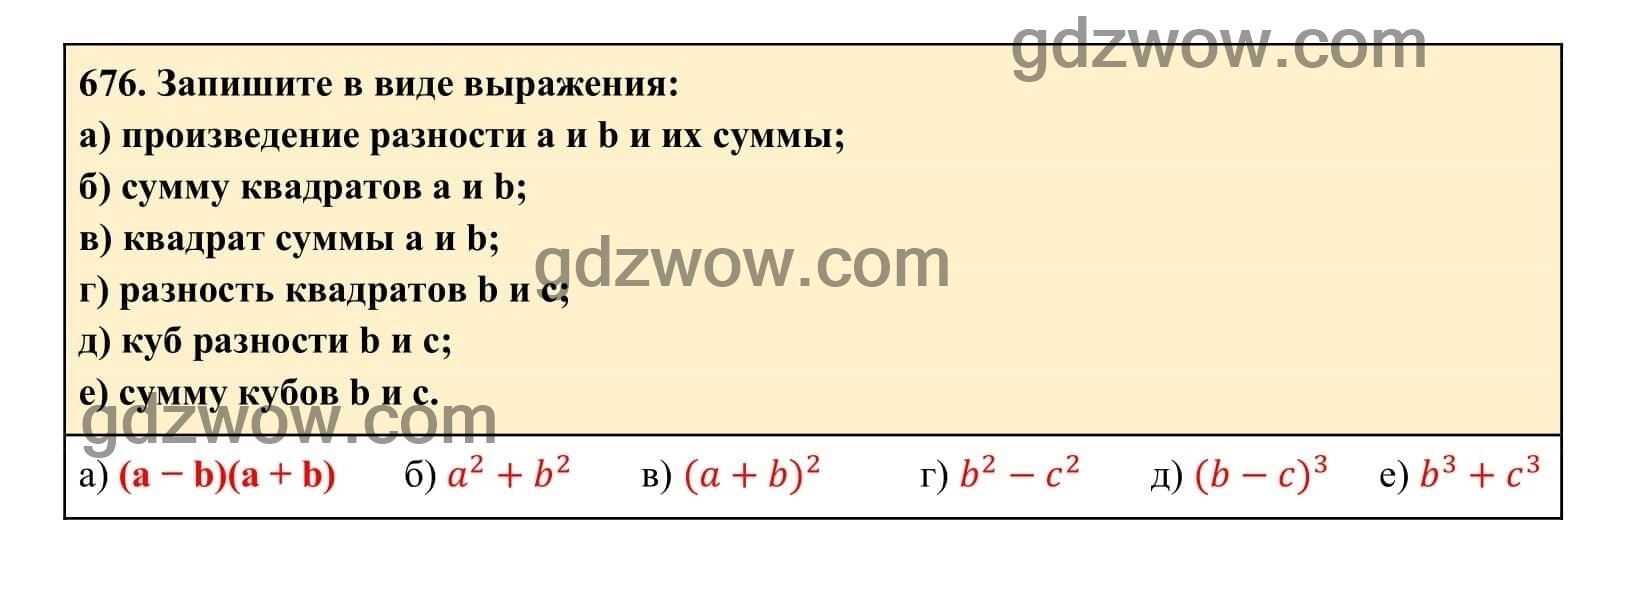 Упражнение 676 - ГДЗ по Алгебре 7 класс Учебник Макарычев (решебник) - GDZwow